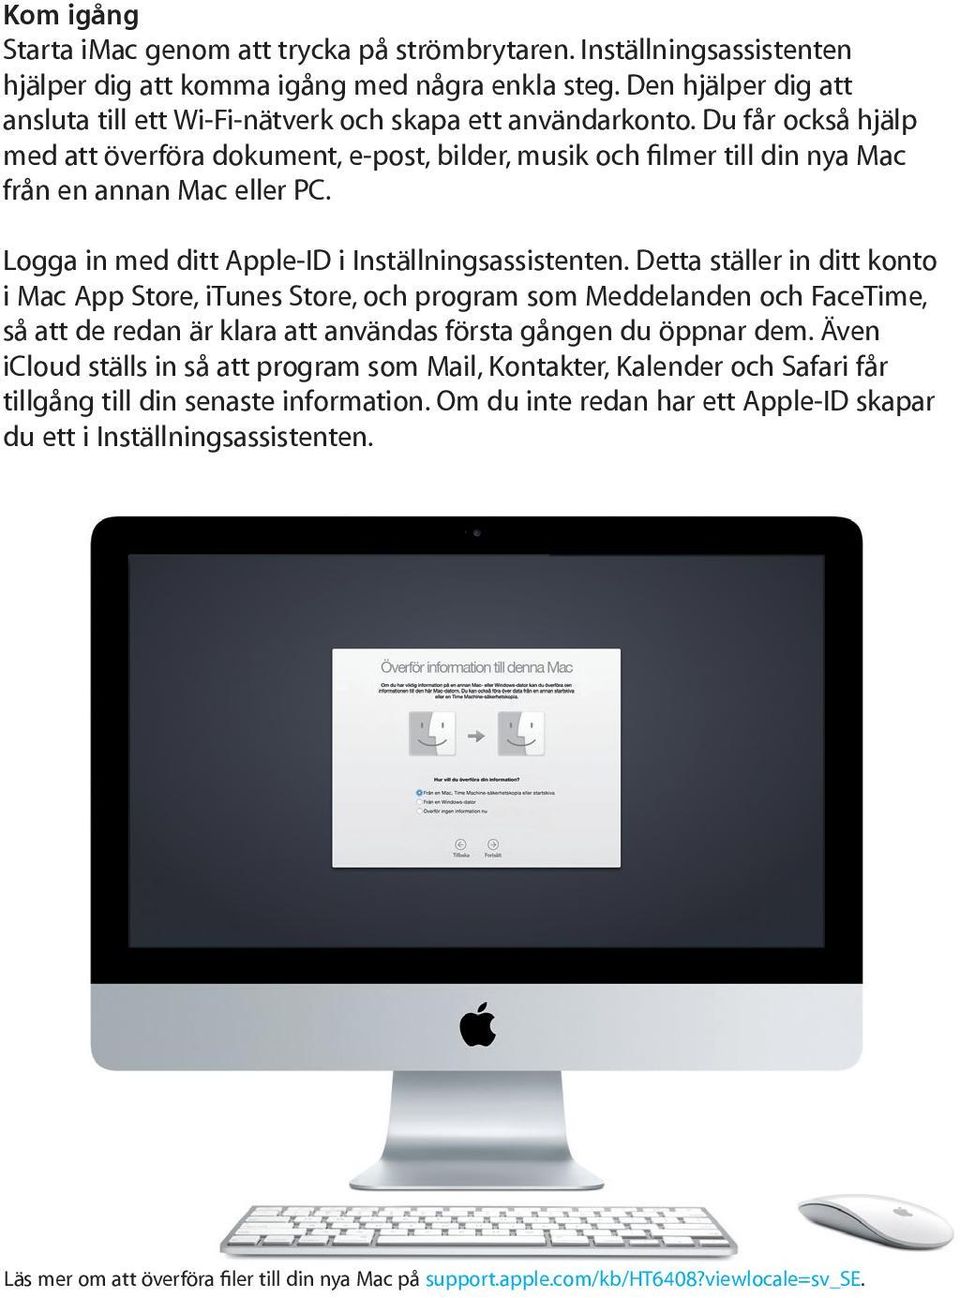 Du får också hjälp med att överföra dokument, e-post, bilder, musik och filmer till din nya Mac från en annan Mac eller PC. Logga in med ditt Apple-ID i Inställningsassistenten.